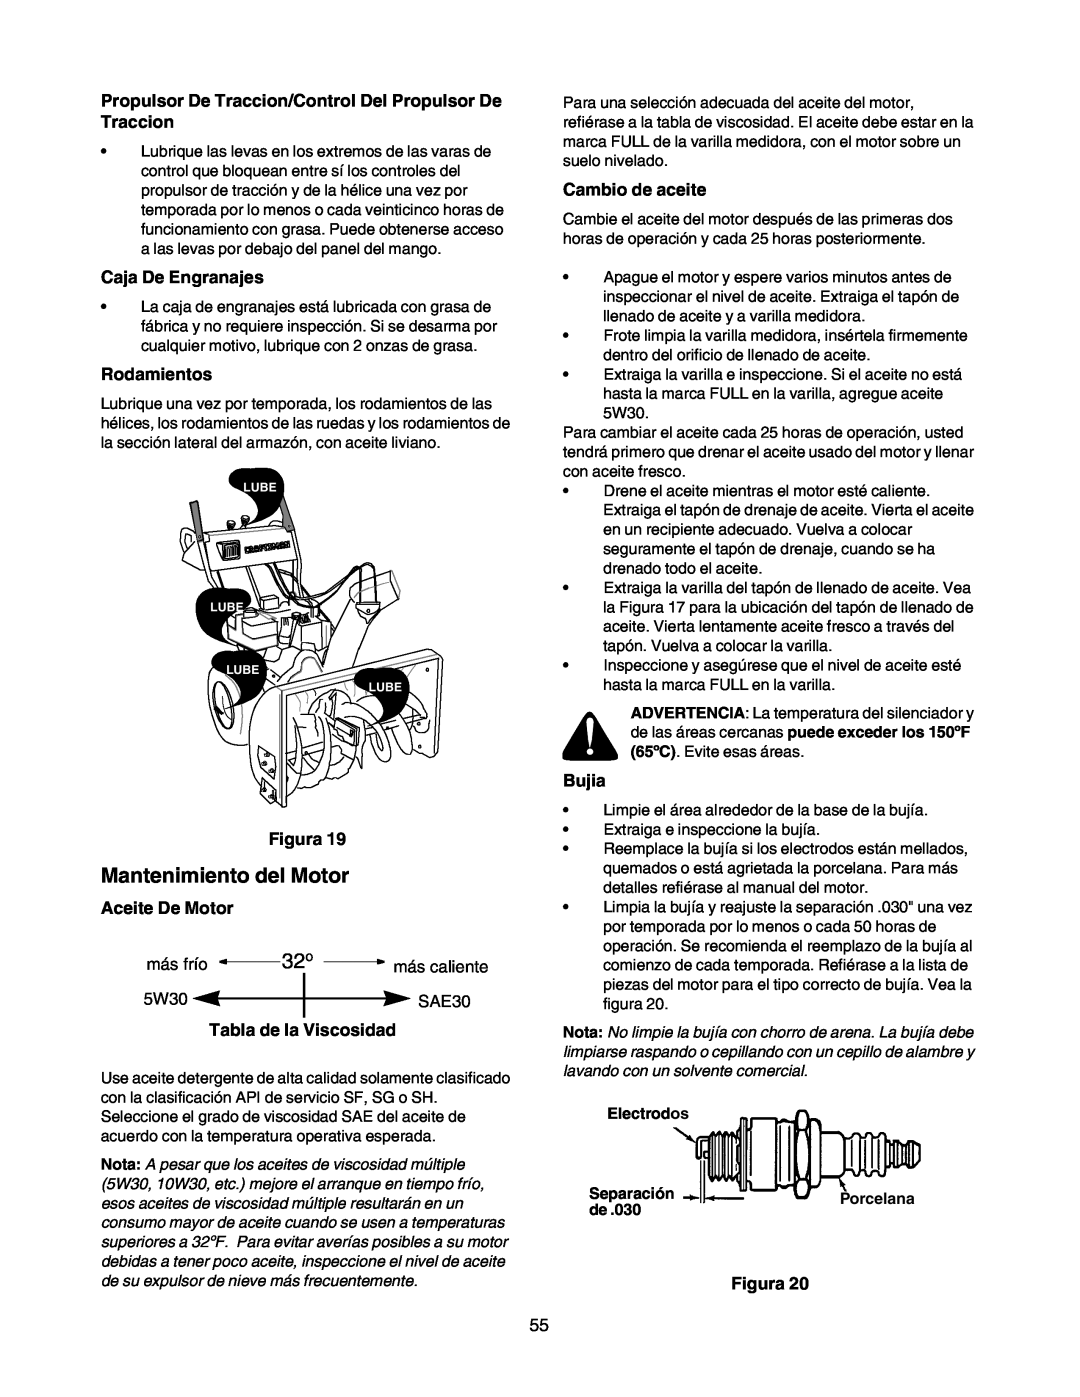 Craftsman 247.88853 Propulsor De Traccion/Control Del Propulsor De Traccion, Caja De Engranajes, Rodamientos, Figura 